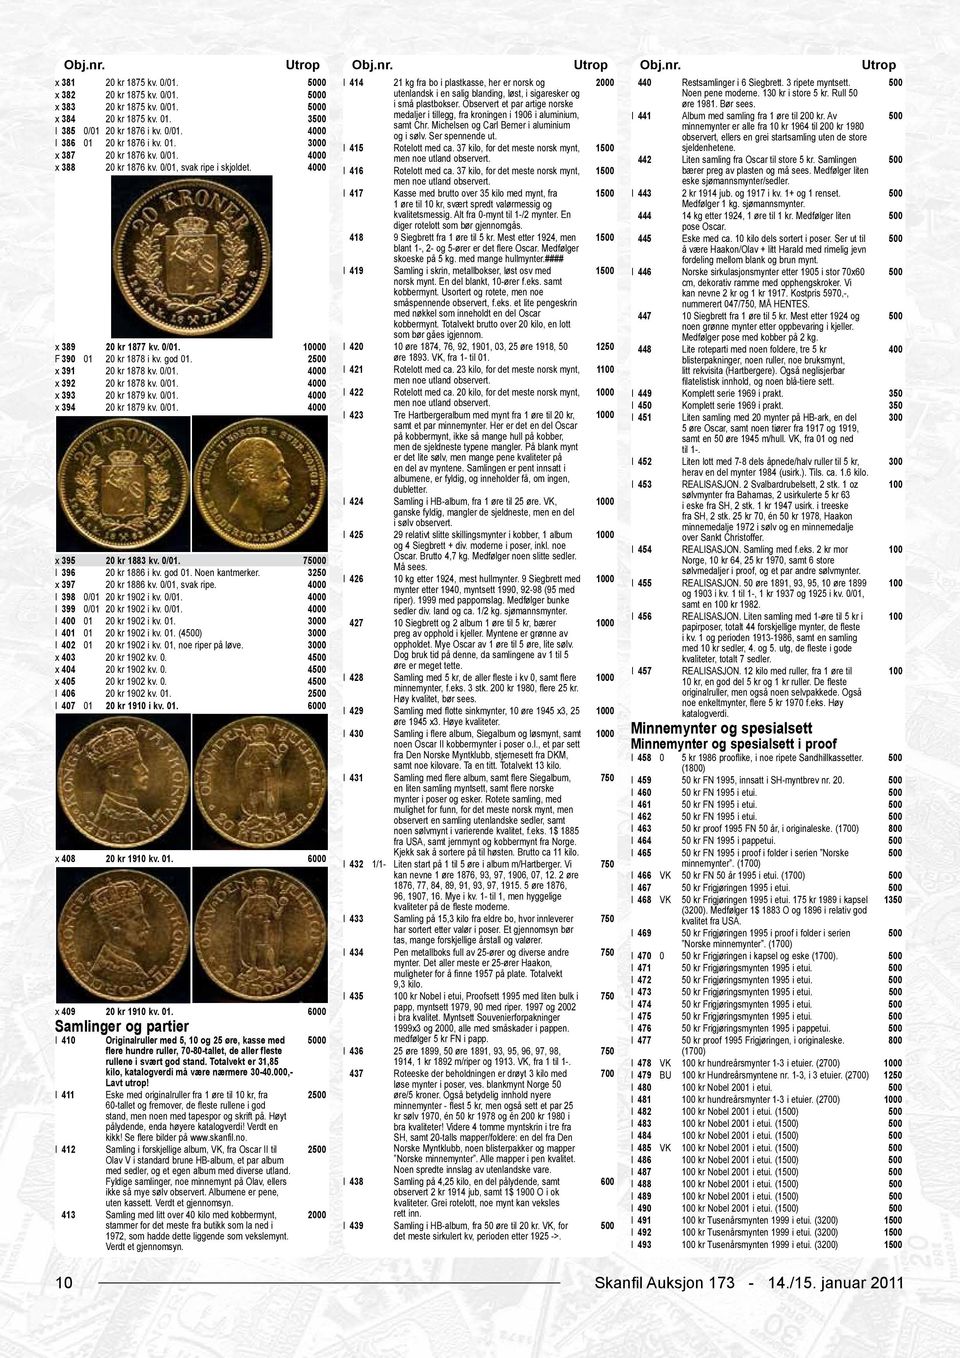 3 medaljer i tillegg, fra kroningen i 1906 i aluminium, I 441 Album med samling fra 1 øre til kr. Av samt Chr. Michelsen og Carl Berner i aluminium I 385 0/01 